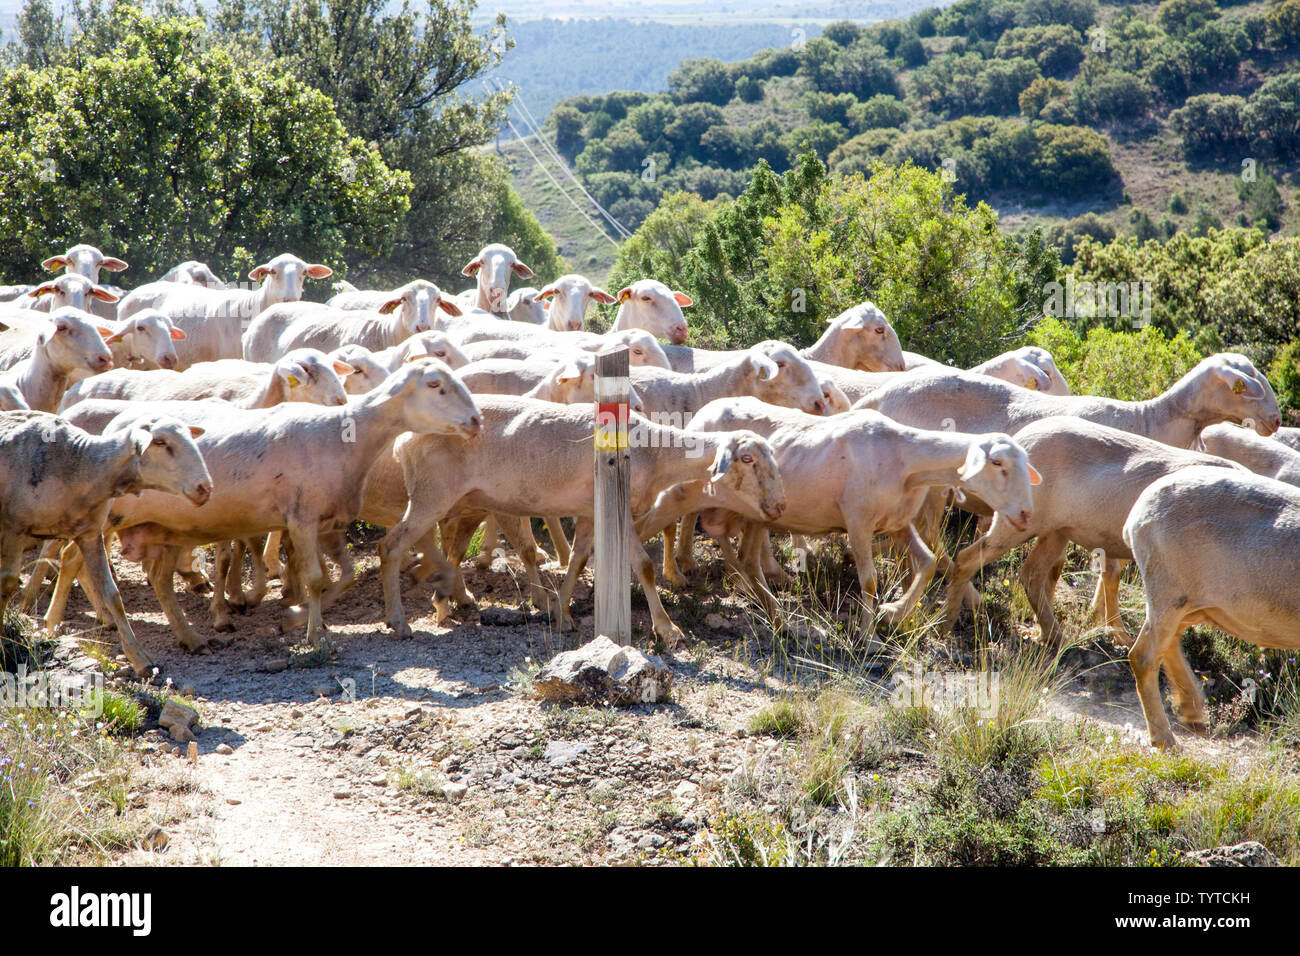 Shepard espagnol menant son troupeau de moutons sur les collines dans la région de Montes Universales près de Albarracin dans la région de l''Aragon Espagne Banque D'Images